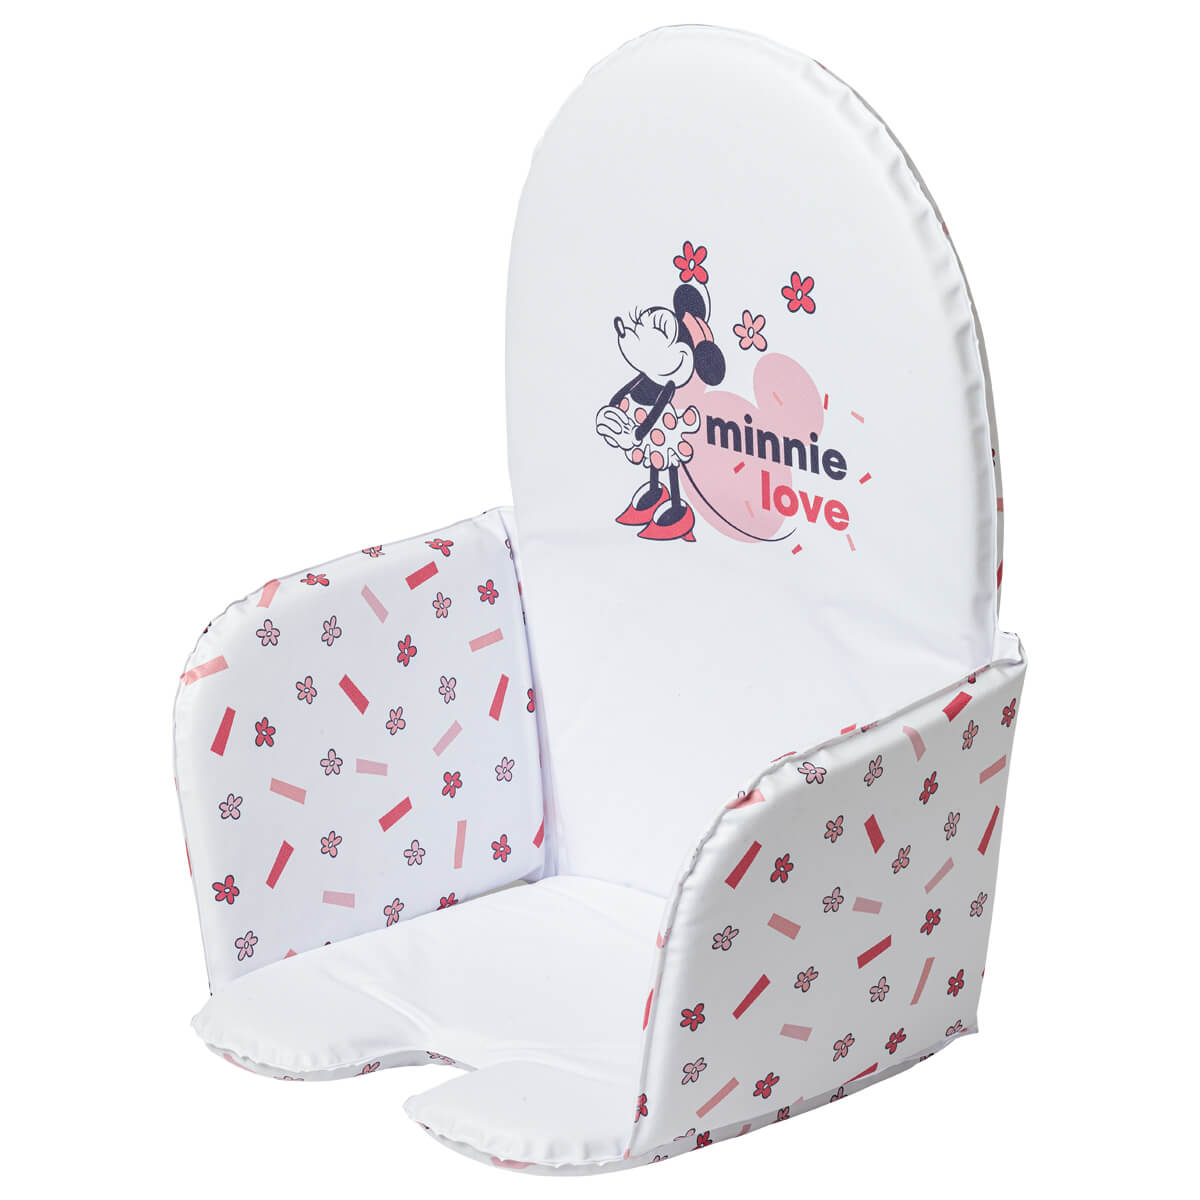 Coussin de chaise universel réversible en PVC - Minnie Confettis